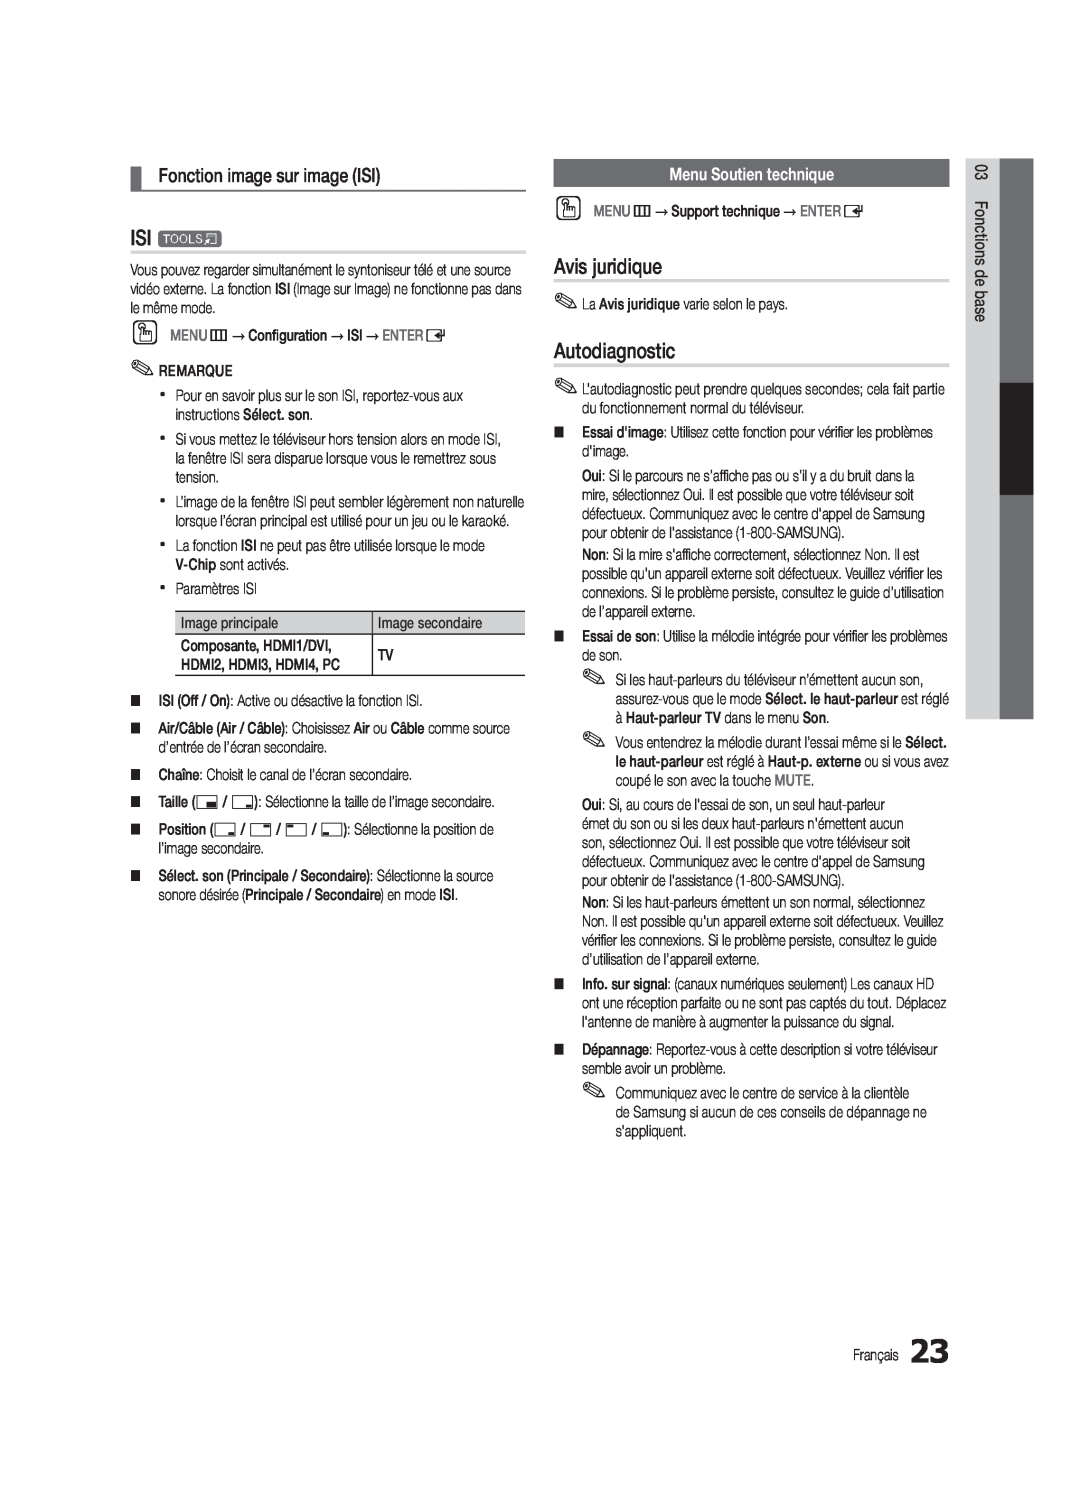 Samsung UC5000-ZC user manual ISI t, Avis juridique, Autodiagnostic, Fonction image sur image ISI, Menu Soutien technique 